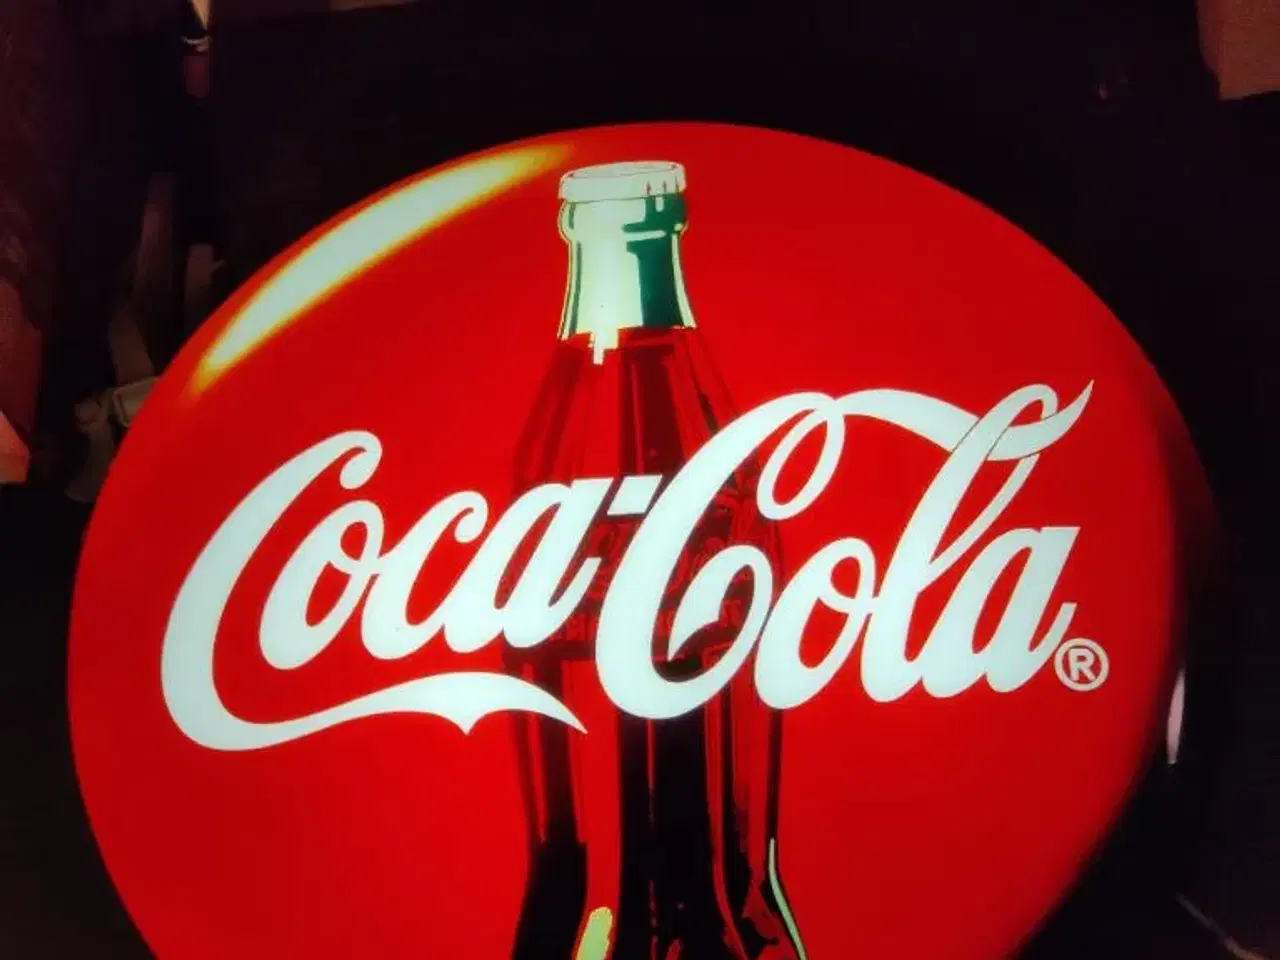 Billede 2 - Coca cola lysskilt